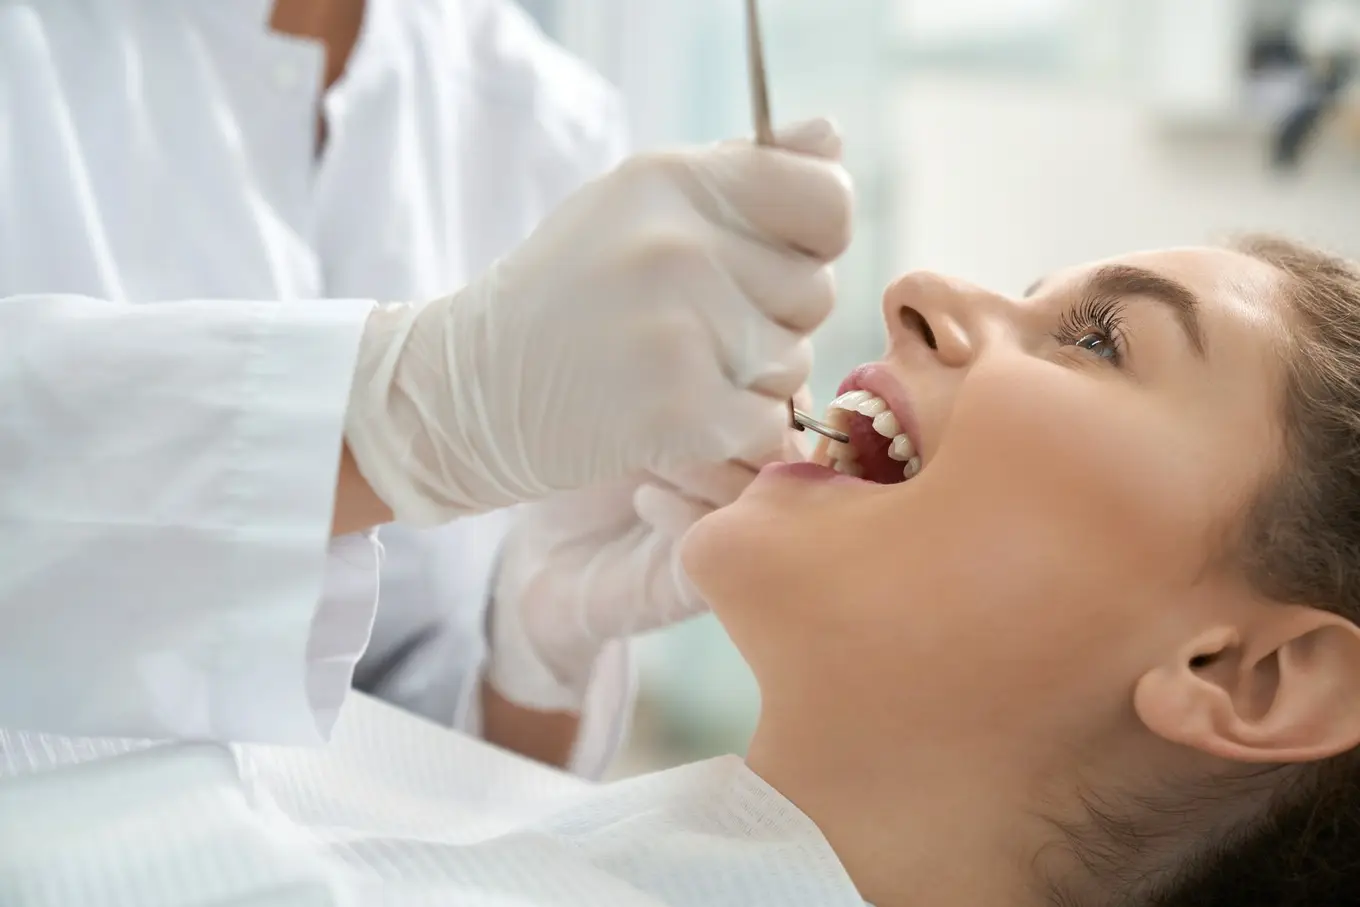 wizyta u ortodonty